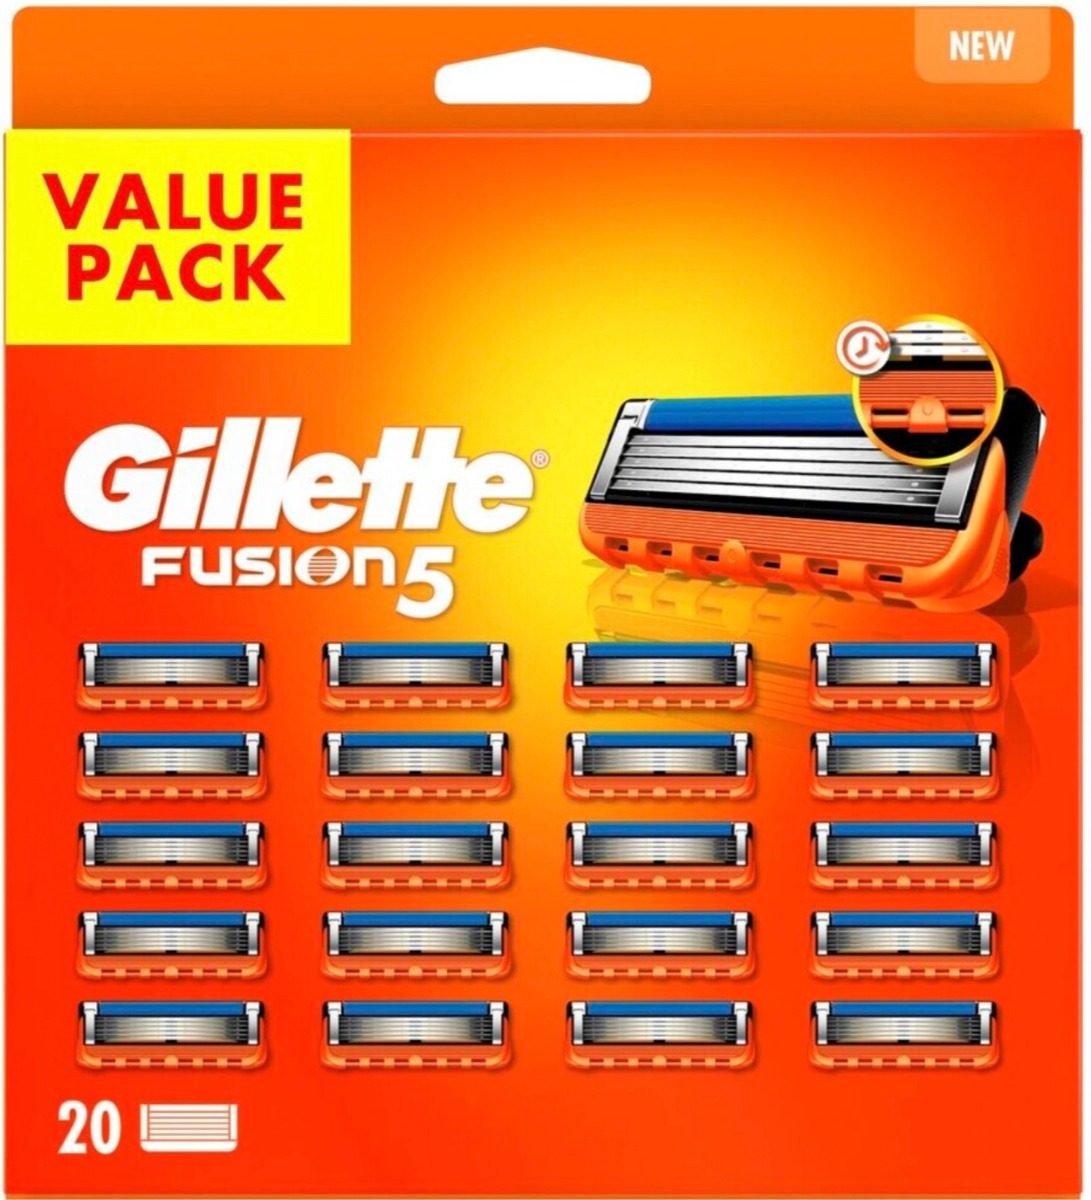 Gillette Fusion5 14 scheermesjes